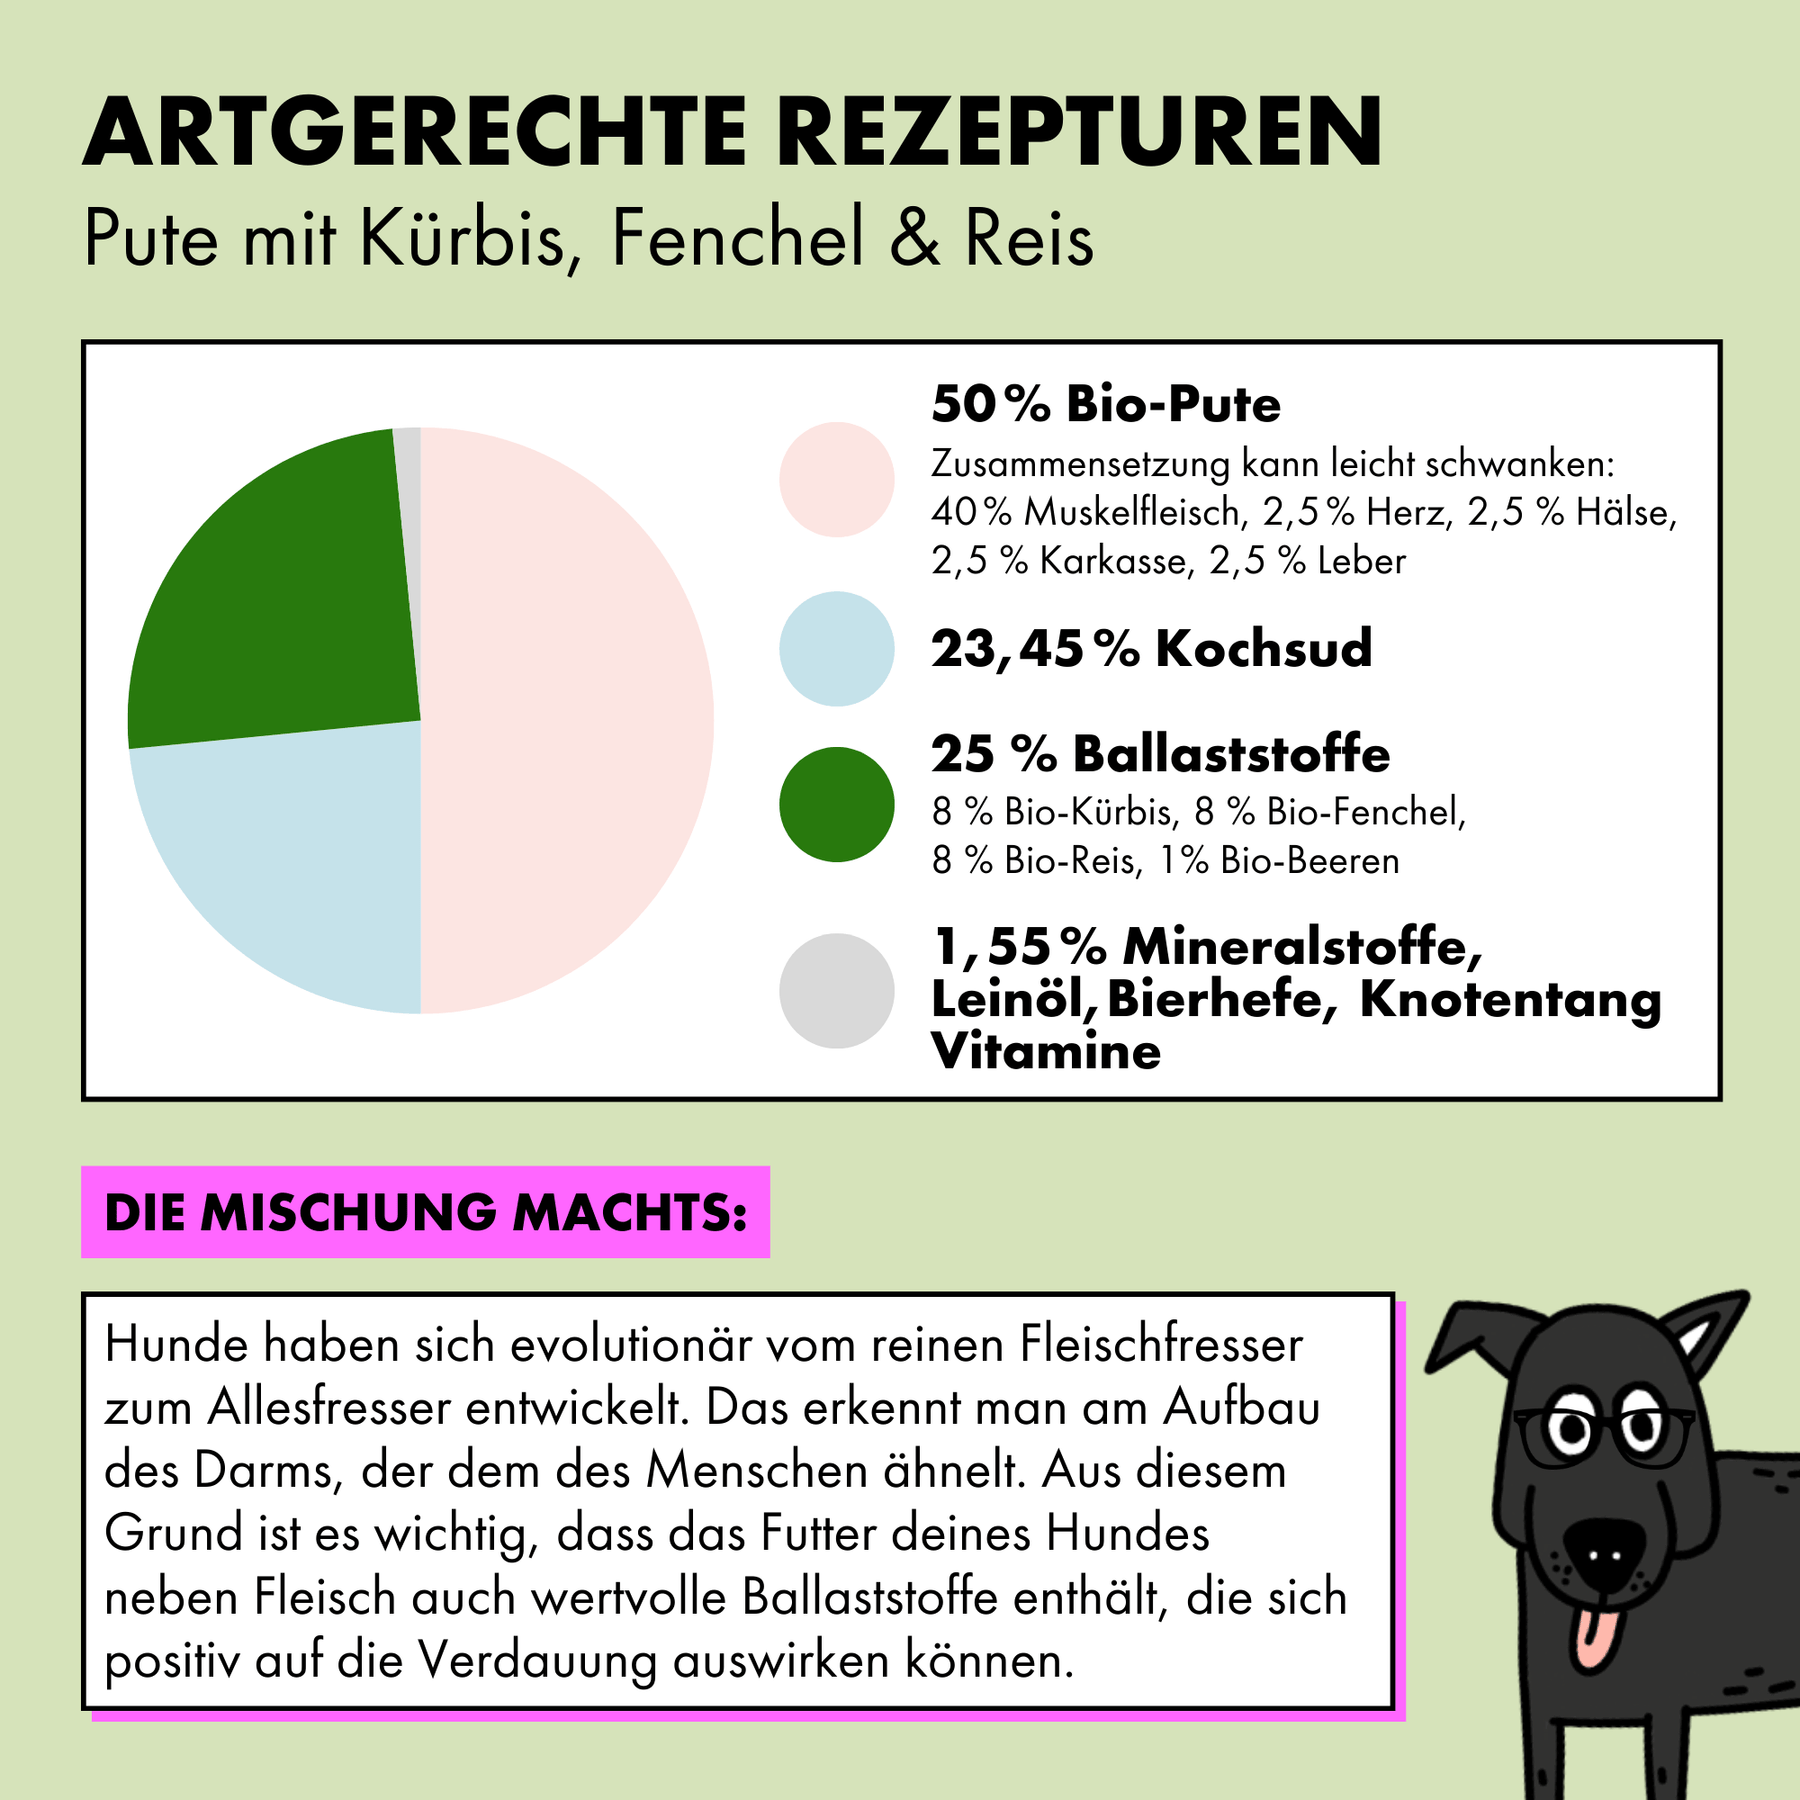 Das Bio Hundefutter von STRAYZ in der Sorte Pute setzt sich aus den folgenden Zutaten zusammen: 50 % Pute* (ca. 40 % Brustfleisch, ca. 2,5 % Herzen, ca. 2,5 % Hälse, ca. 2,5 % Karkasse, ca. 2,5 % Leber), 23,45 % Kochsud*, 8 % Kürbis*, 8 % Fenchel*, 8 % Reis*, 1 % Beeren* (Rote Johannisbeere, Schwarze Johannisbeere, Heidelbeere, Brombeere, Himbeere), 0,55 % Mineralstoffe, 0,5 % Leinöl*, 0,45 % Bierhefe, 0,05 % Knotentang *aus kontrolliert ökologischer Erzeugung